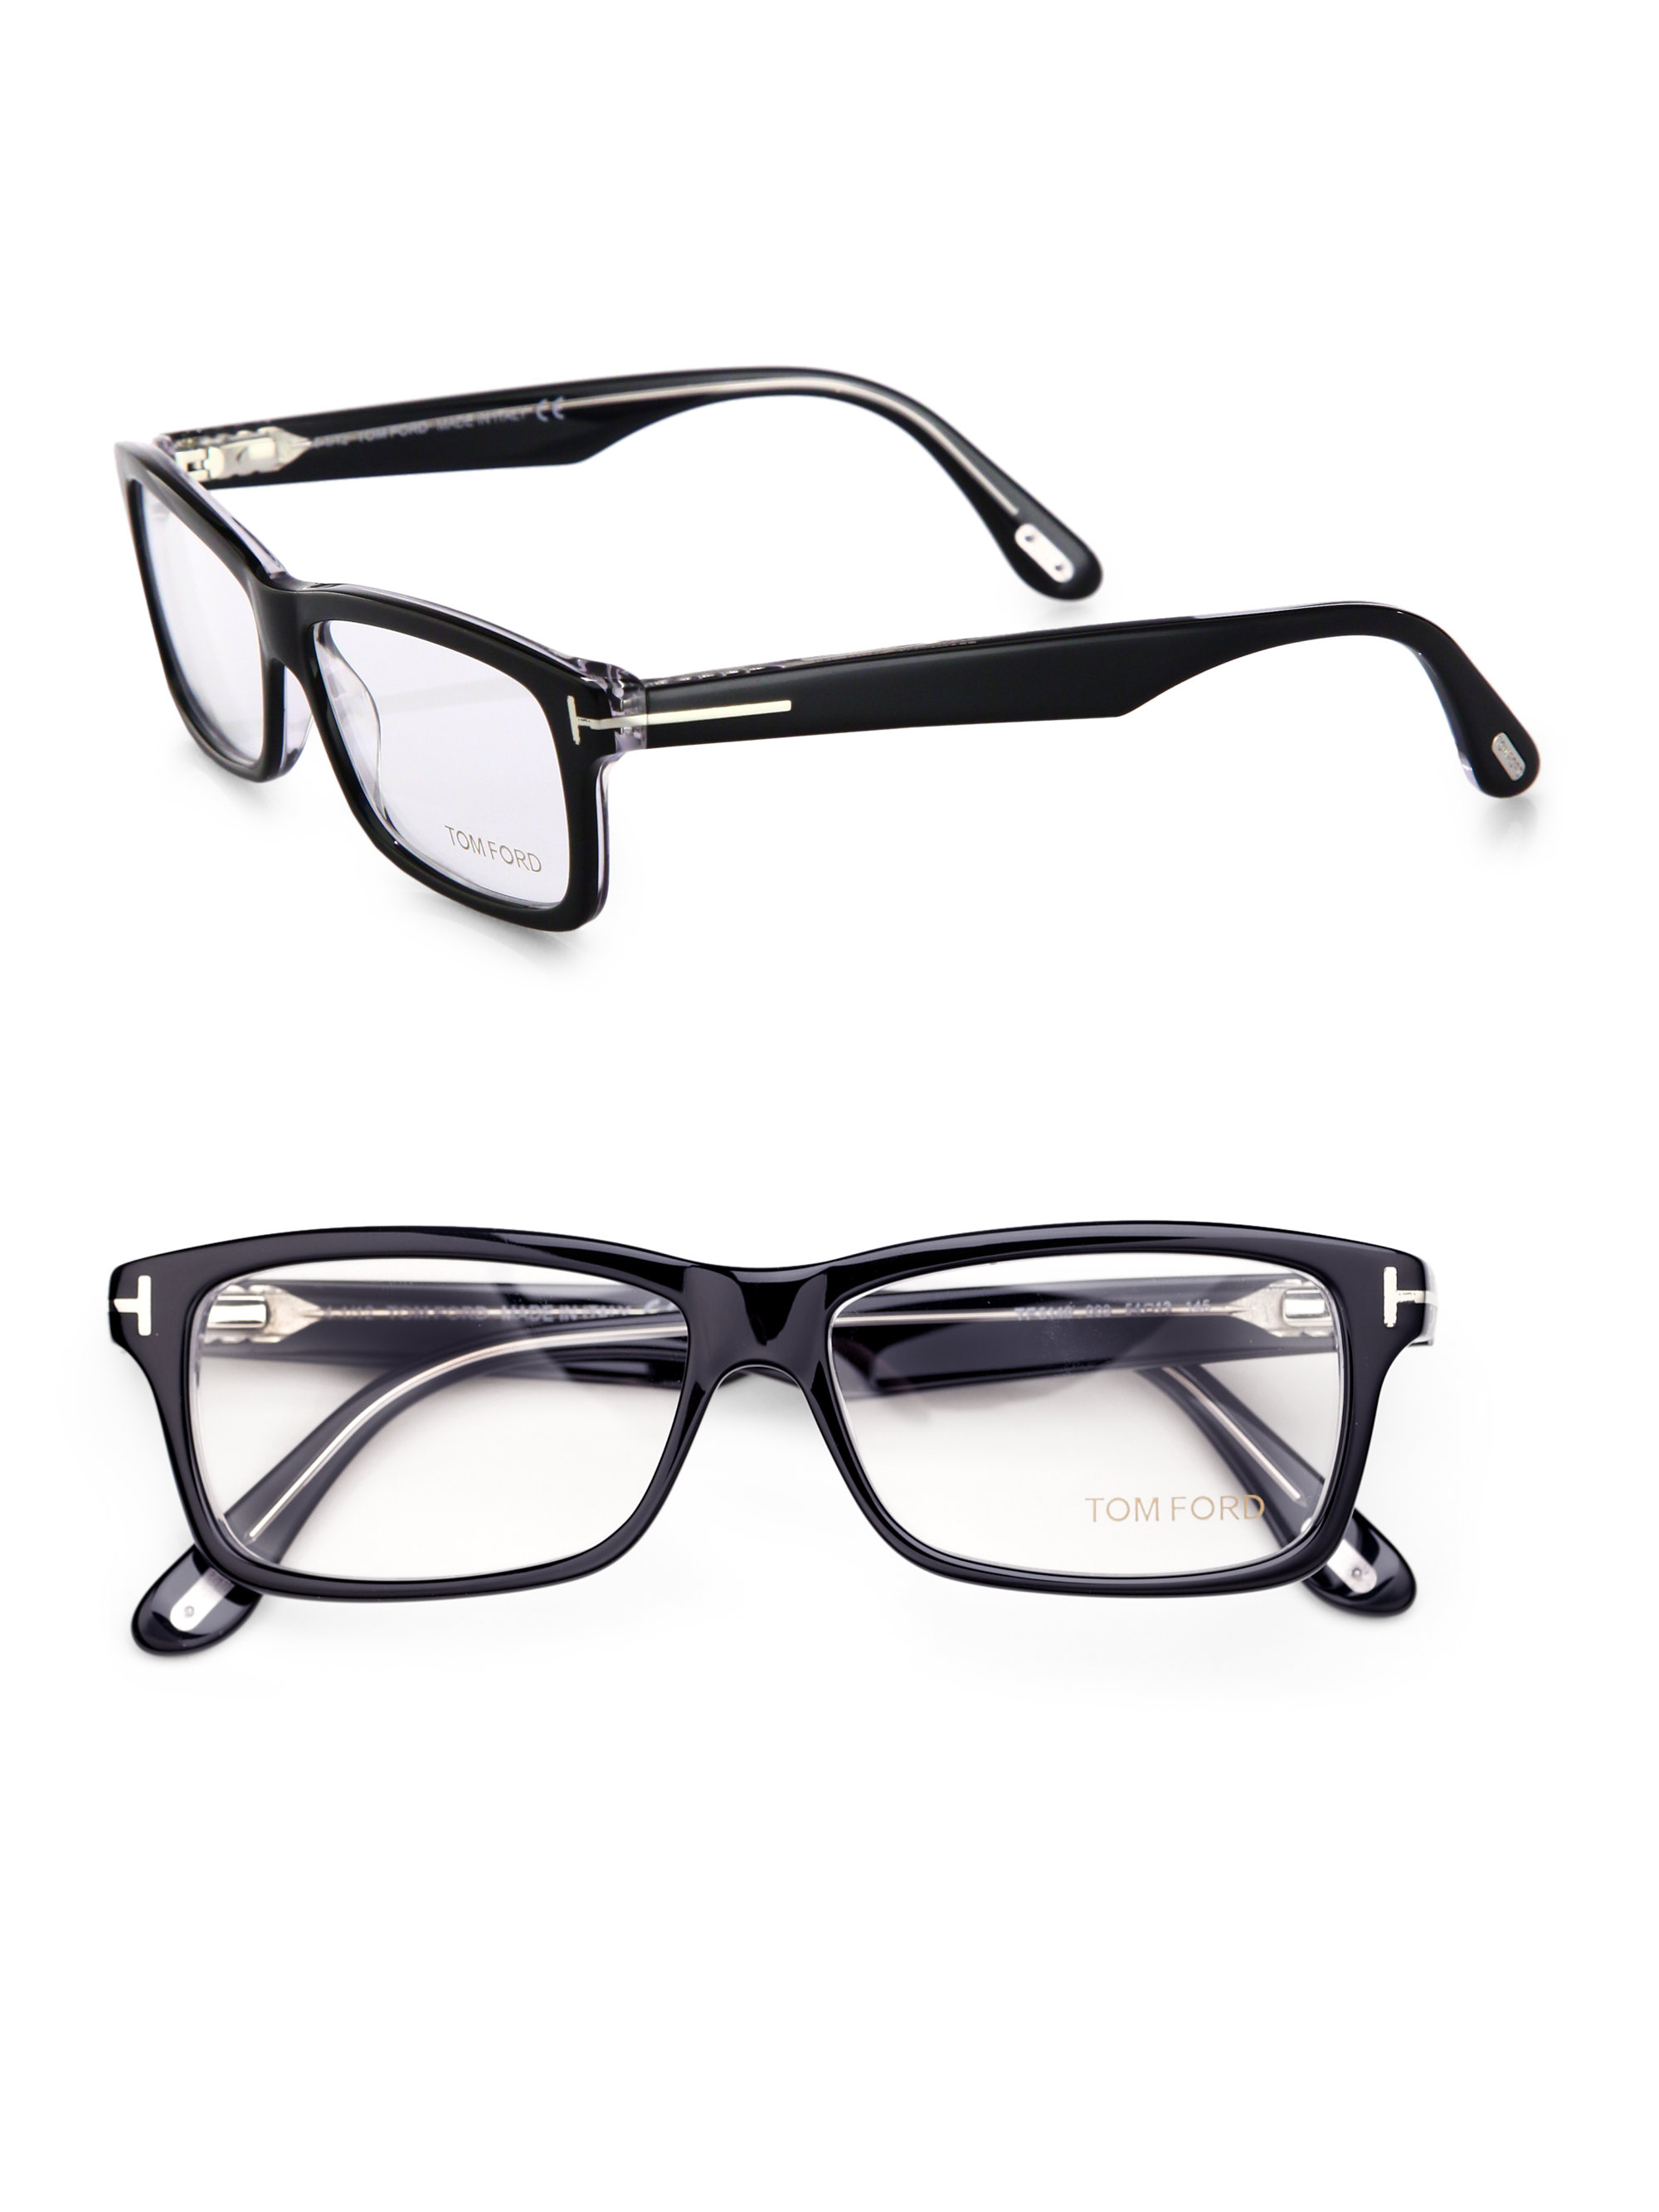 Tom Ford Rectangular Plastic Eye-Glasses in Black - Lyst